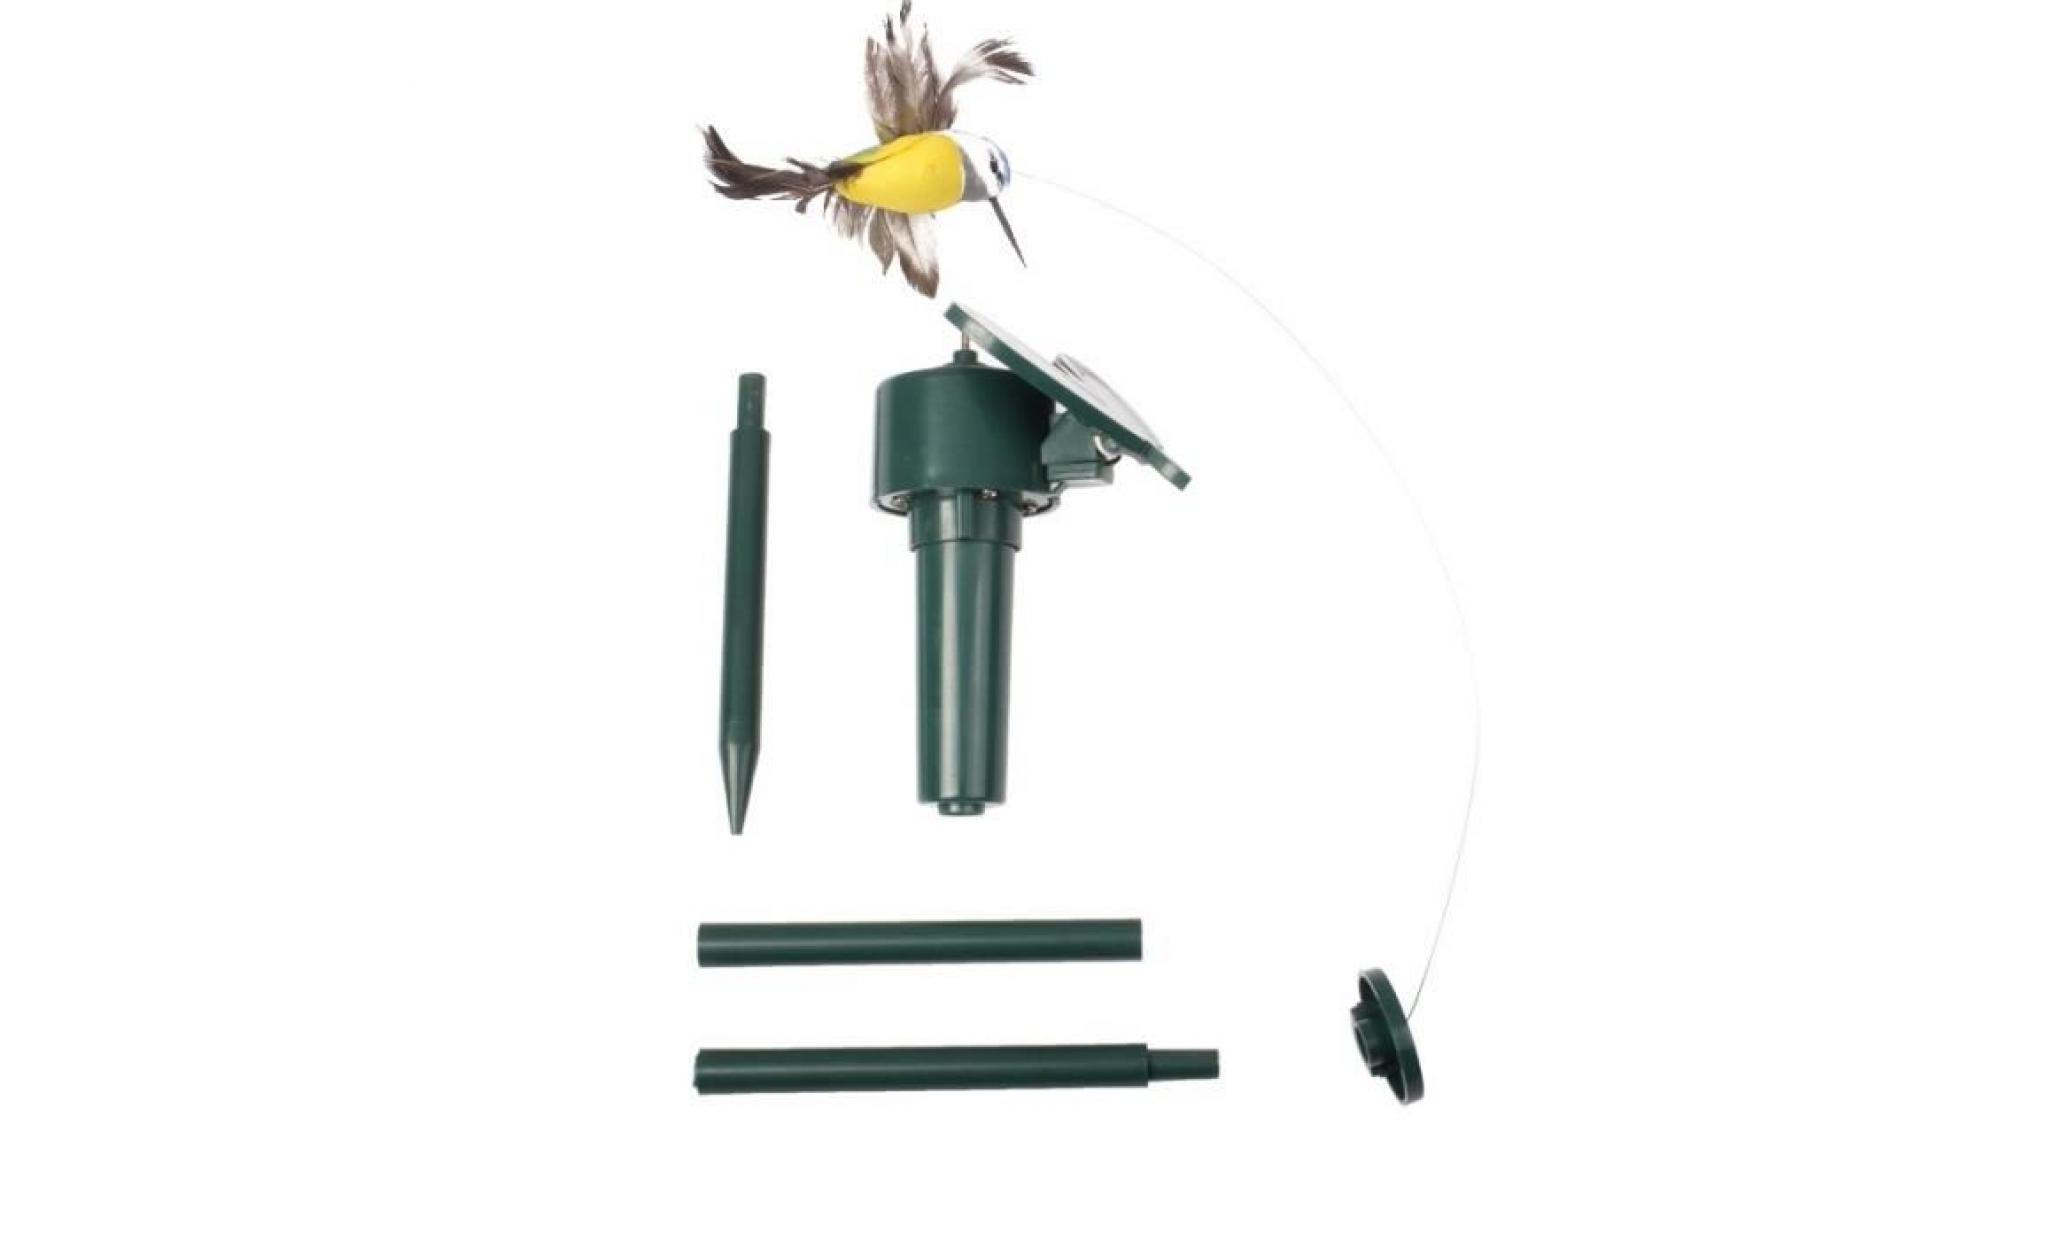 borne solaire de jardin   modèle oiseau volant rotatif   décoration pas cher